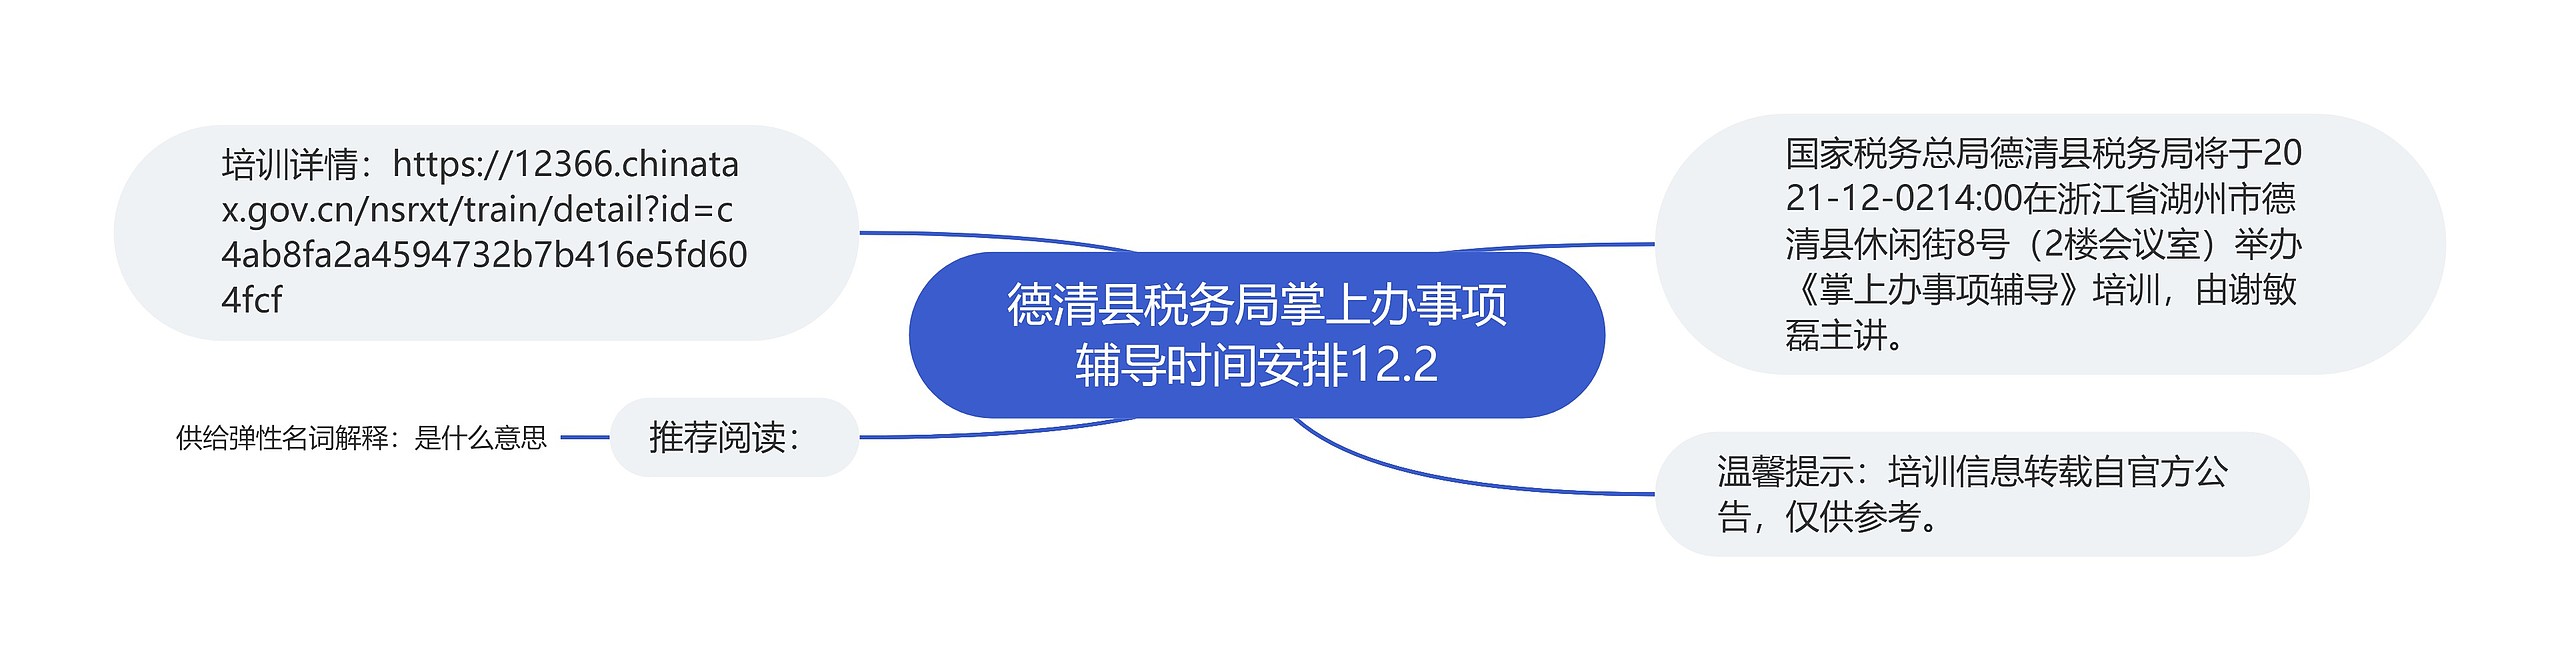 德清县税务局掌上办事项辅导时间安排12.2思维导图